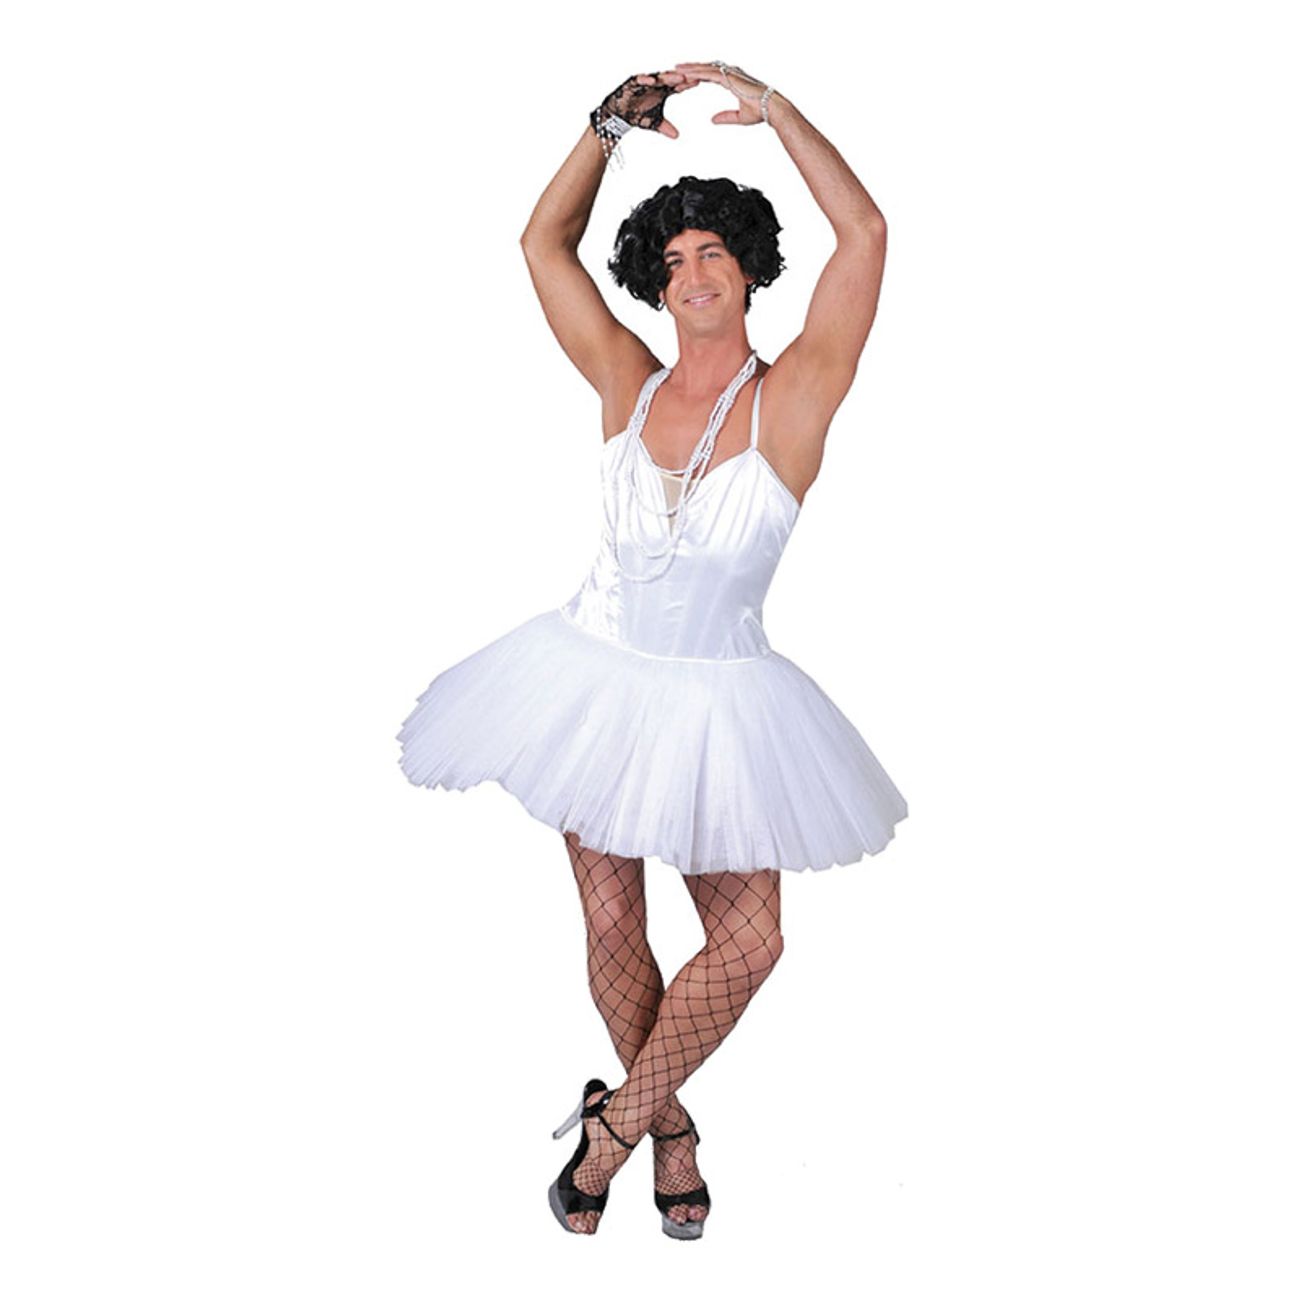 samtidig historie Uensartet Mandlig Ballerina Kostume | Partykungen